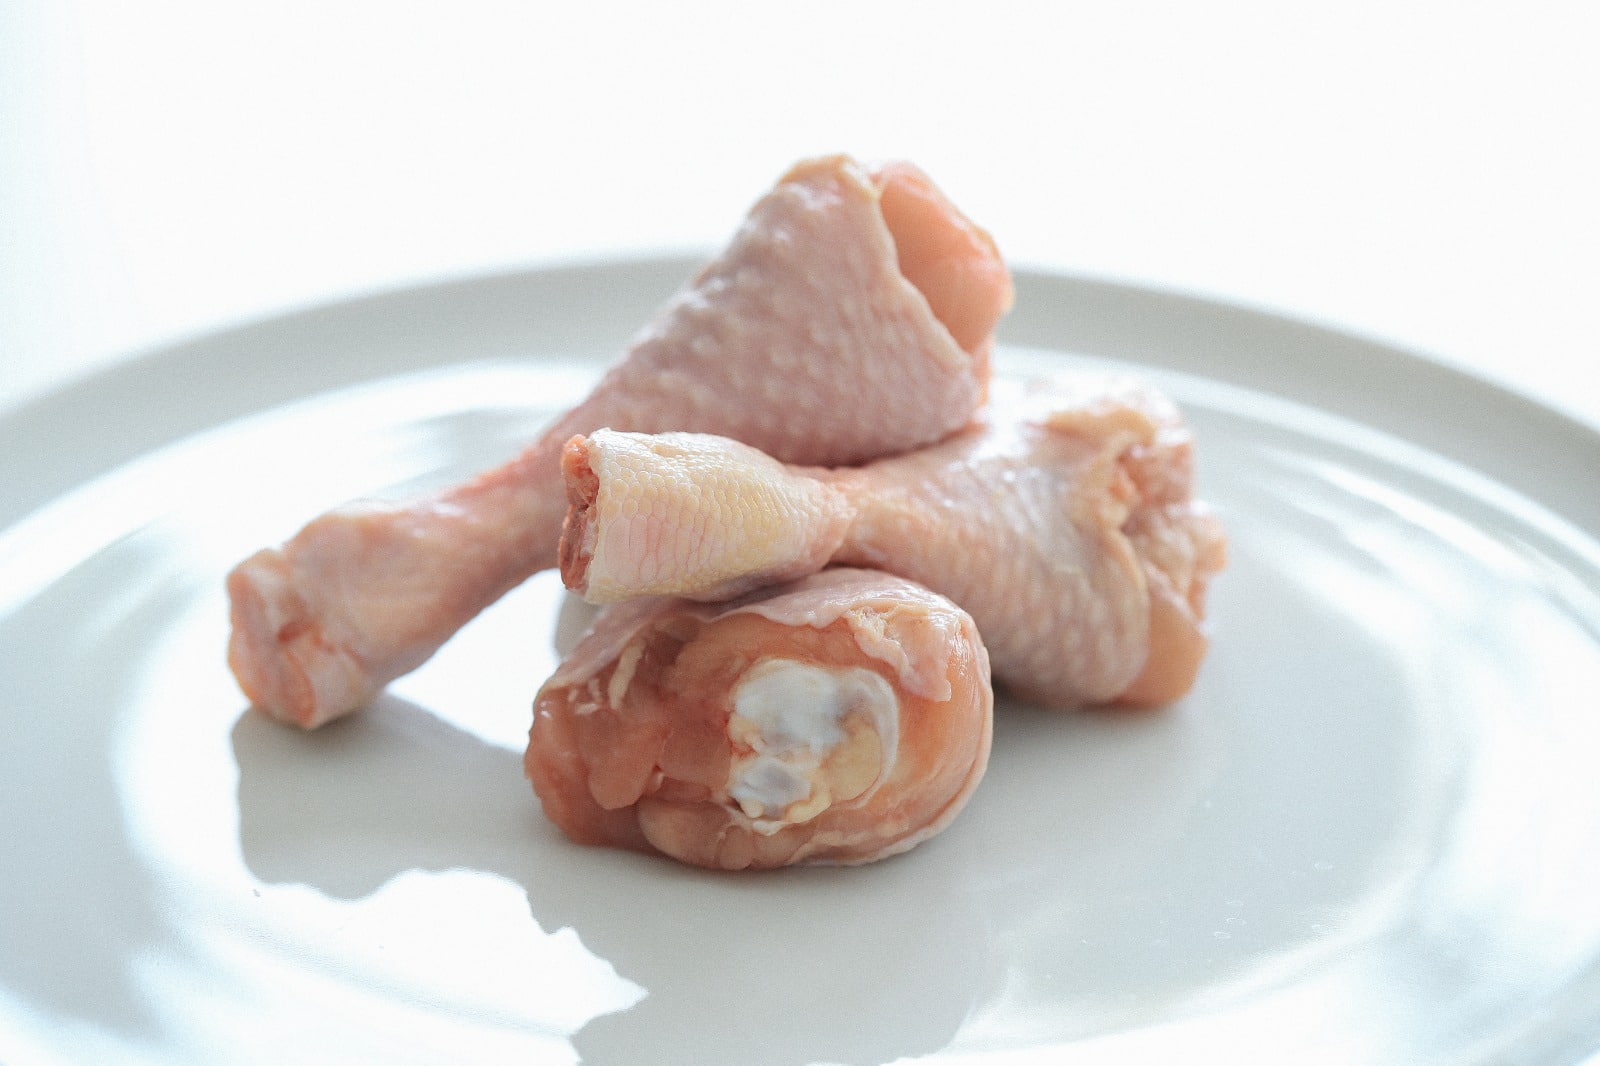 Pastikan Dimasak Merata, Ini Bahaya Konsumsi Daging Ayam Mentah!